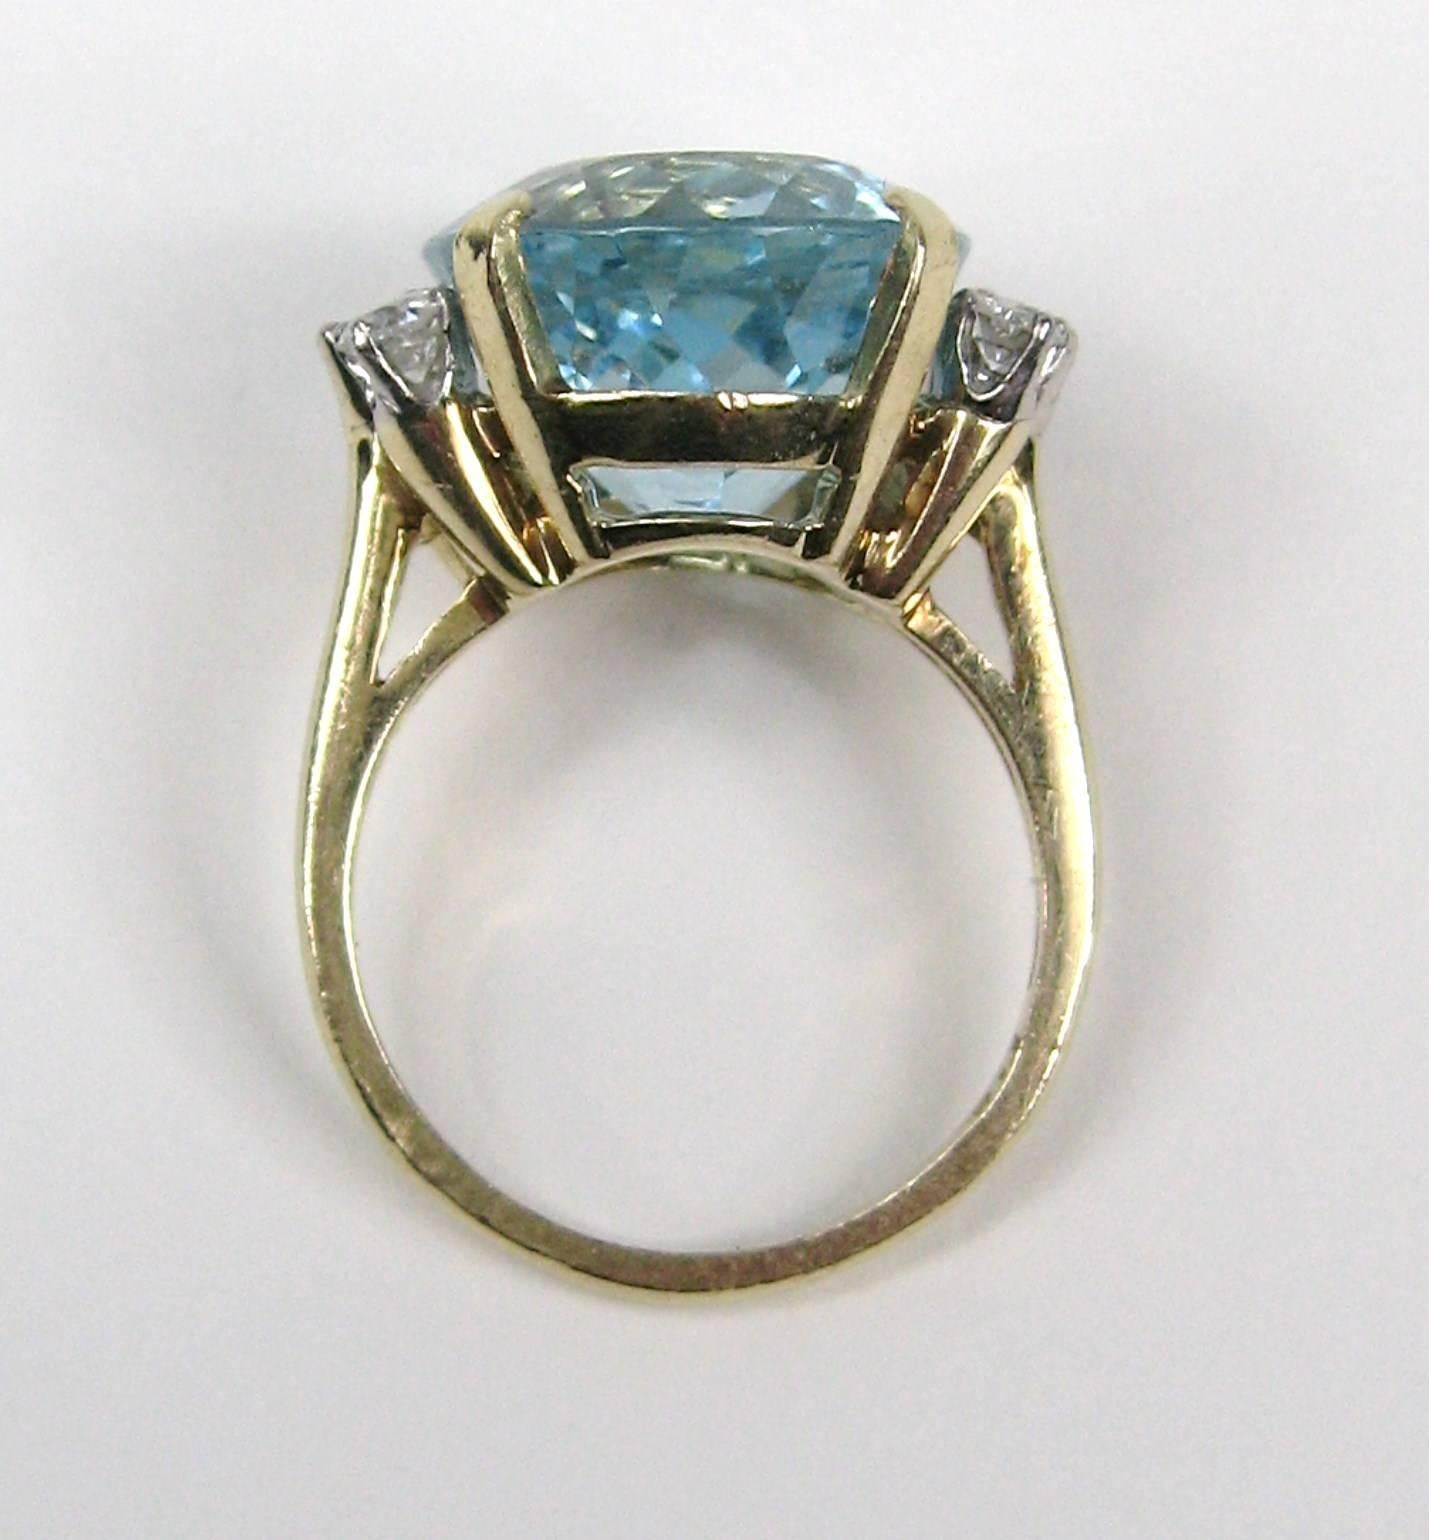 13 carat aquamarine ring